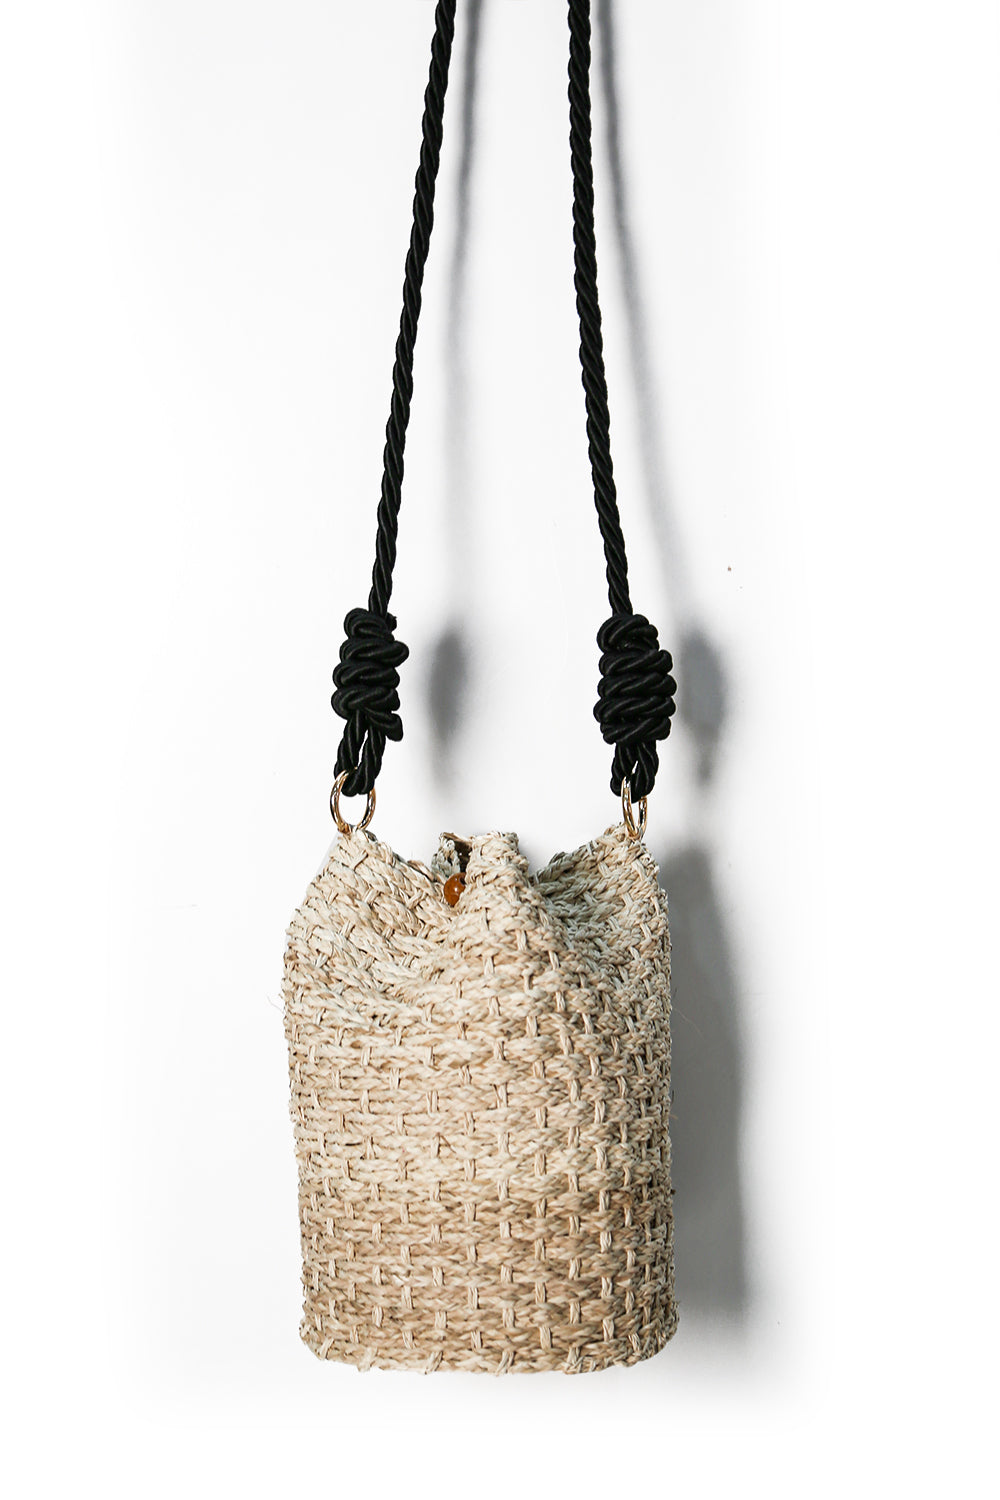 Maui Woven Bag Natural with Black Strap Handbags